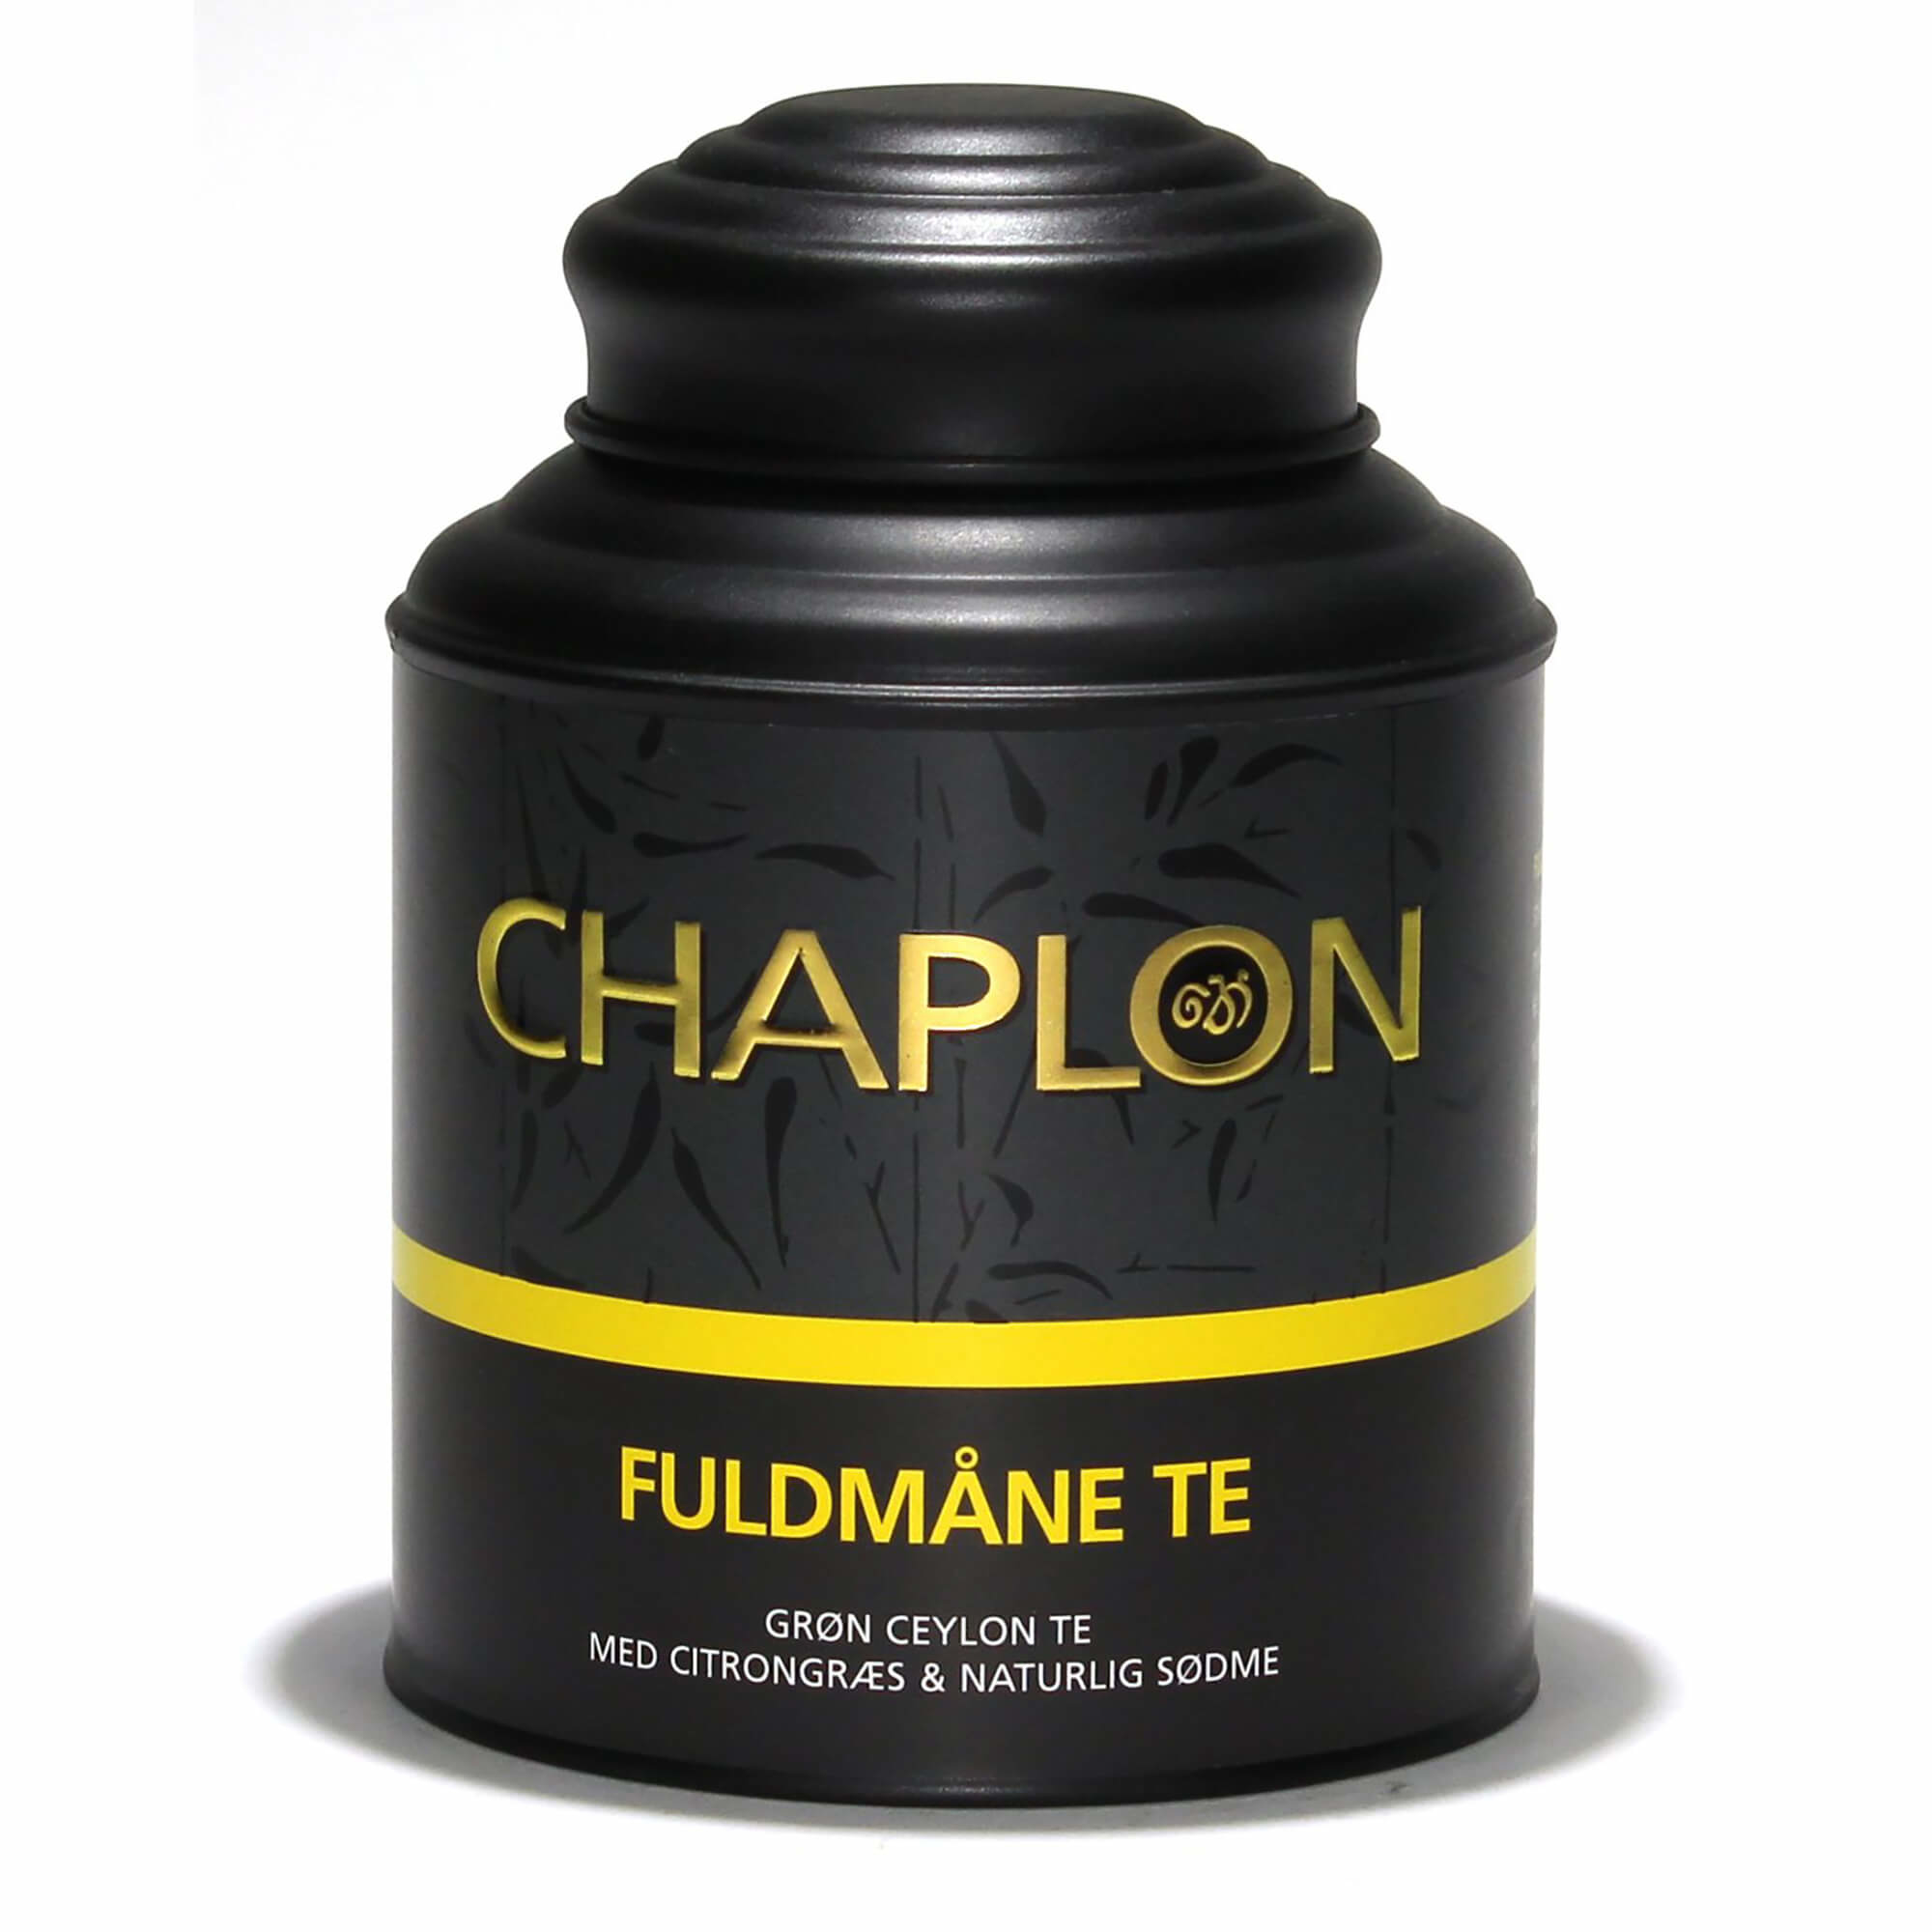 Chaplon Fuldmåne Te - 160 gram dåse thumbnail